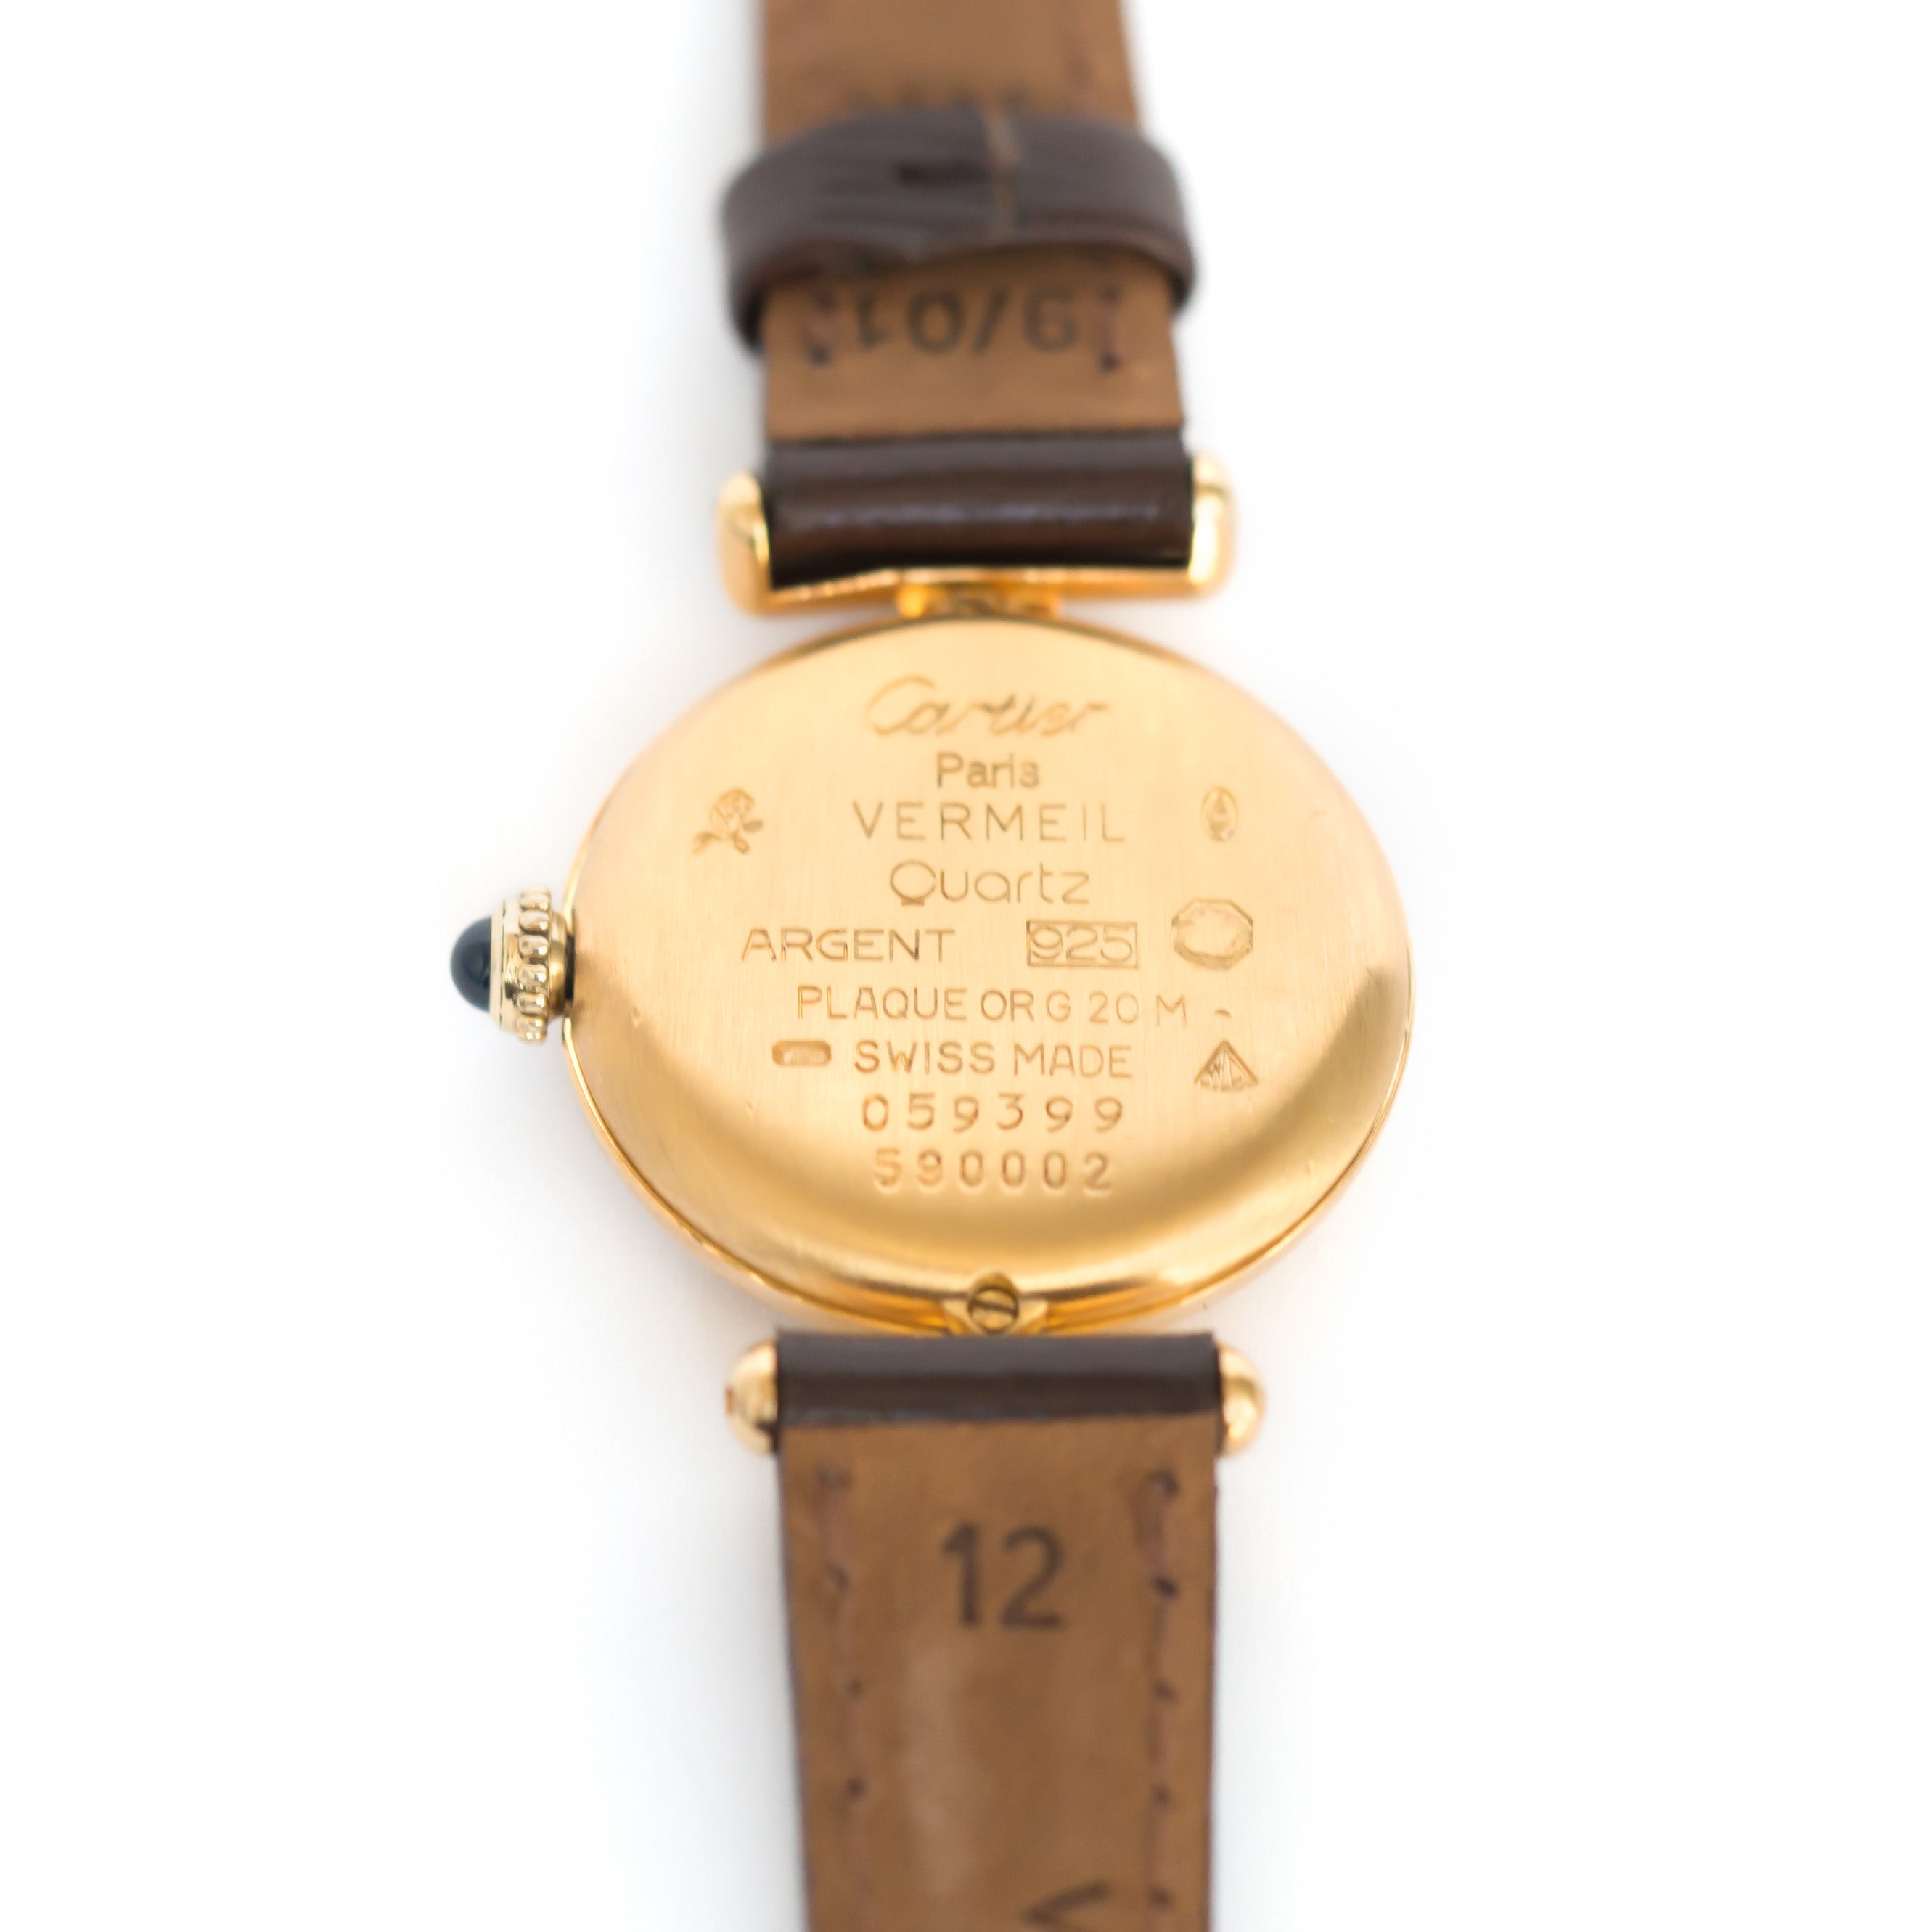 Cartier Vermeil Watch - The Verma Group